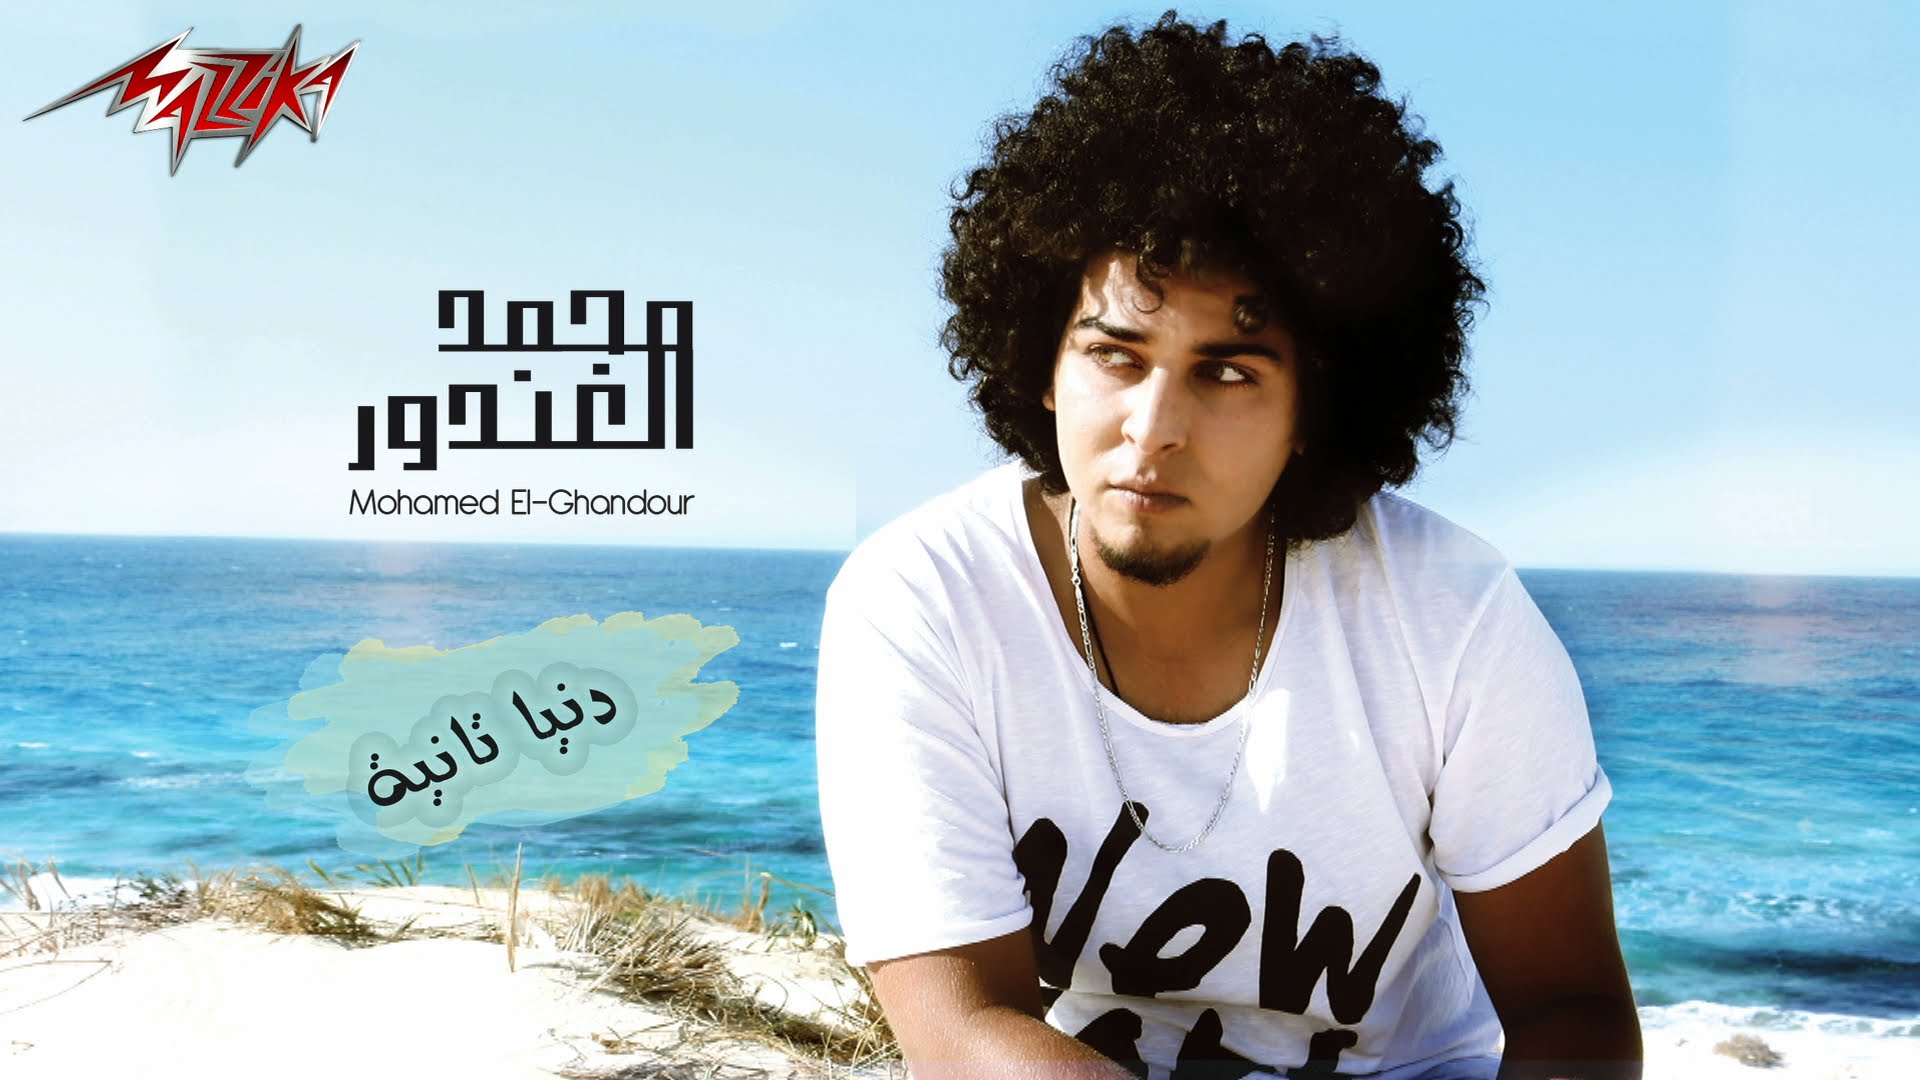 يوتيوب تحميل اغنية دنيا تانيه محمد الغندور 2015 Mp3 نسخة اصلية